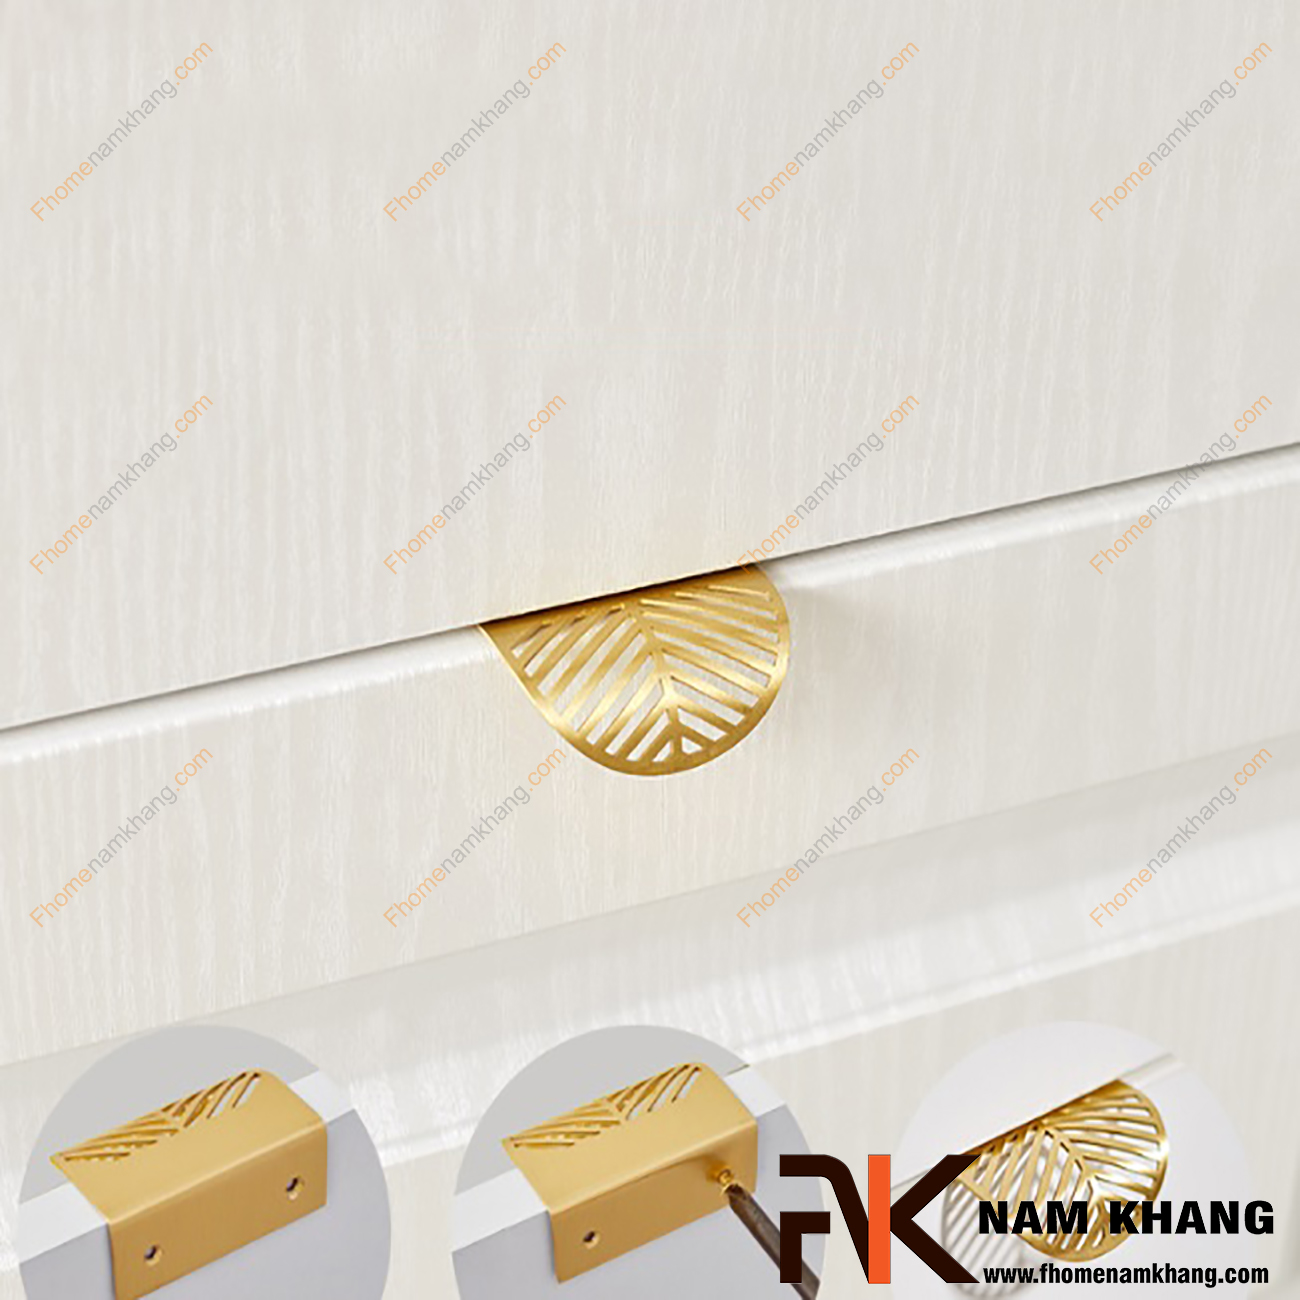 Tay nắm tủ dạng lá chất liệu đồng cao cấp NK233-32VD là một dạng tay nắm có hình dáng khá đặc biệt khi được thiết kế dựa trên dạng uốn cong của lá